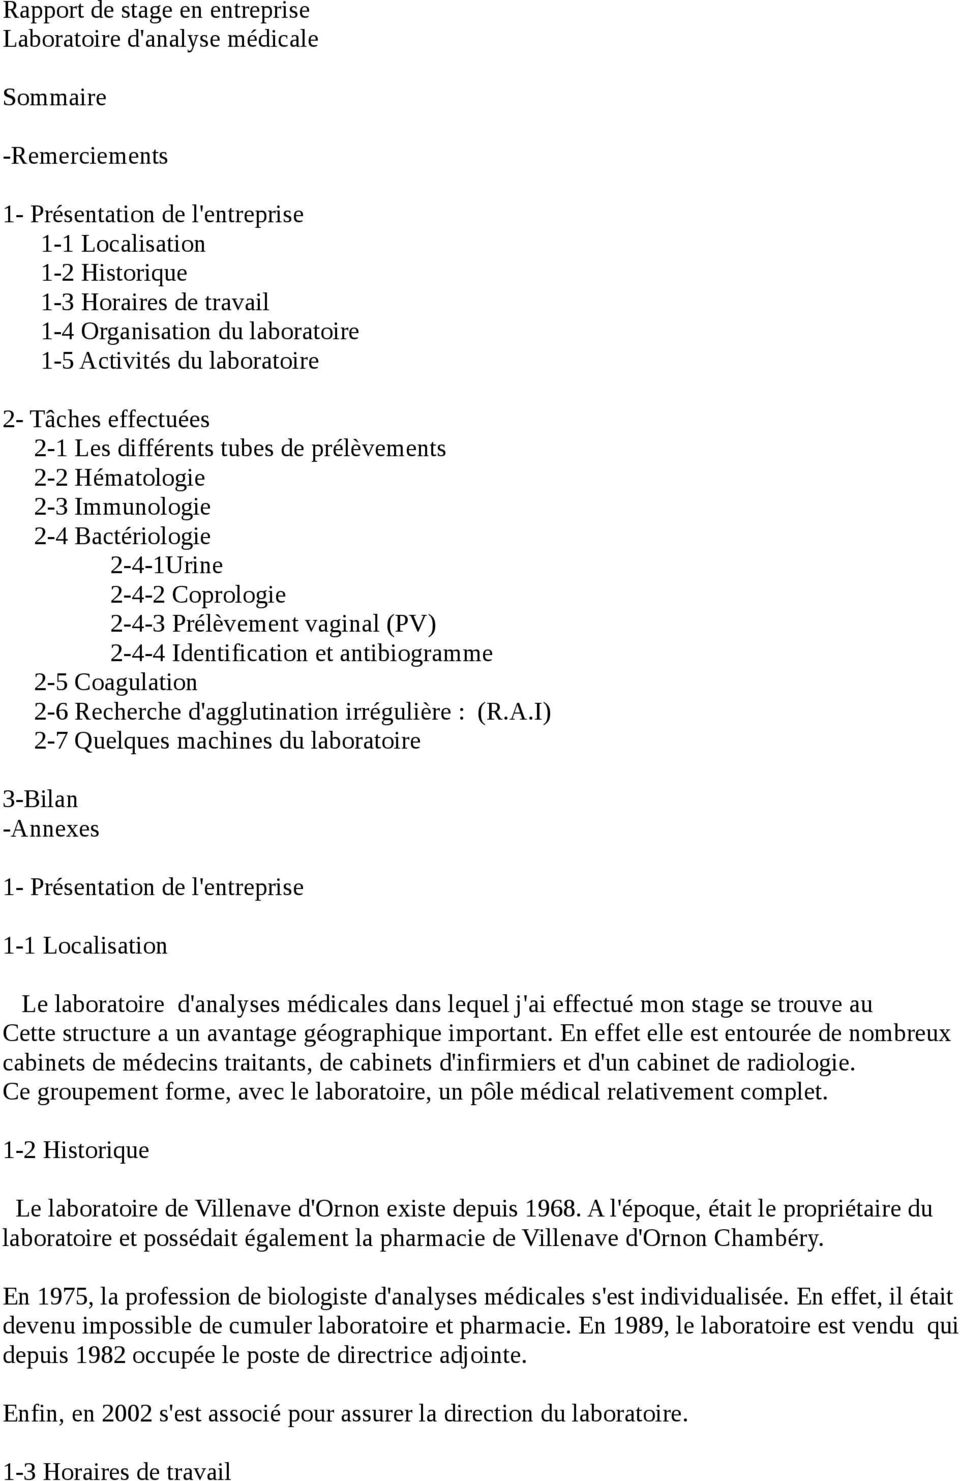 vaginal (PV) 2-4-4 Identification et antibiogramme 2-5 Coagulation 2-6 Recherche d'agglutination irrégulière : (R.A.